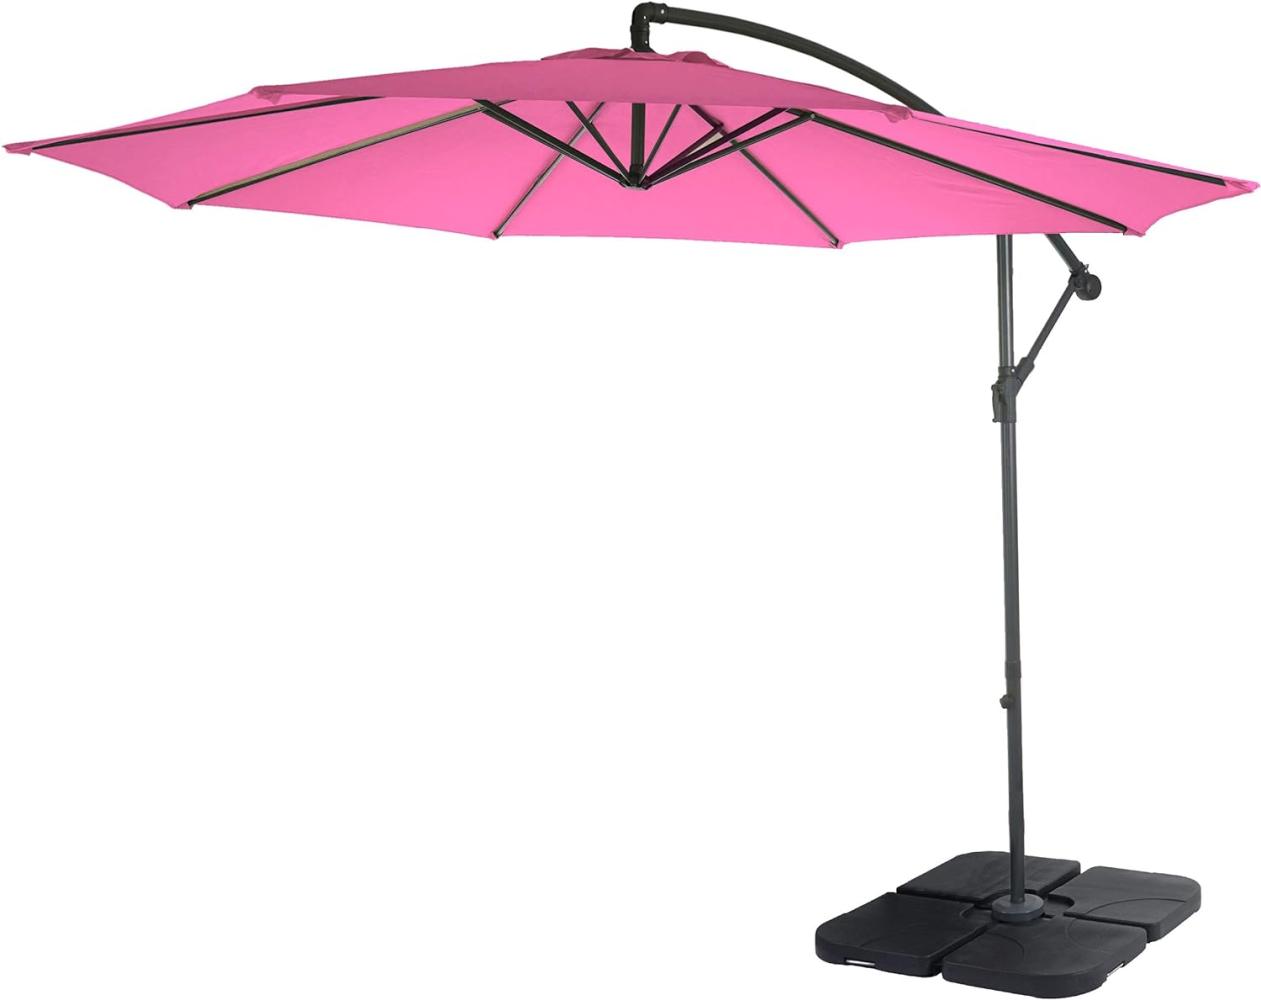 Ampelschirm Acerra, Sonnenschirm Sonnenschutz, Ø 3m neigbar, Polyester/Stahl 11kg ~ pink mit Ständer Bild 1